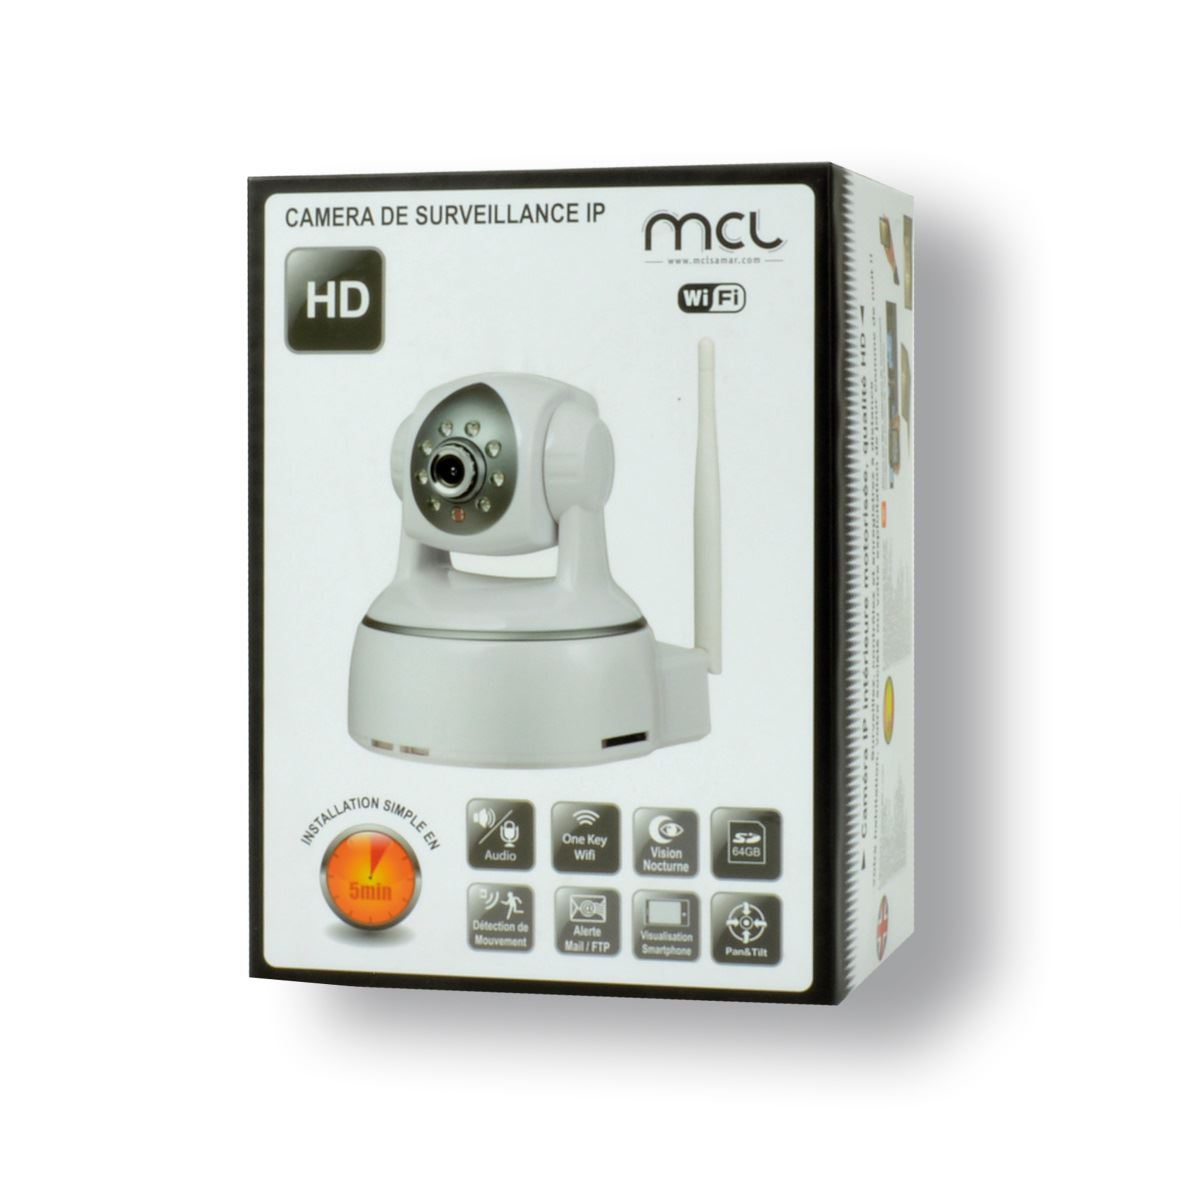 Caméra motorisée IP HD WIFI avec audio MCL